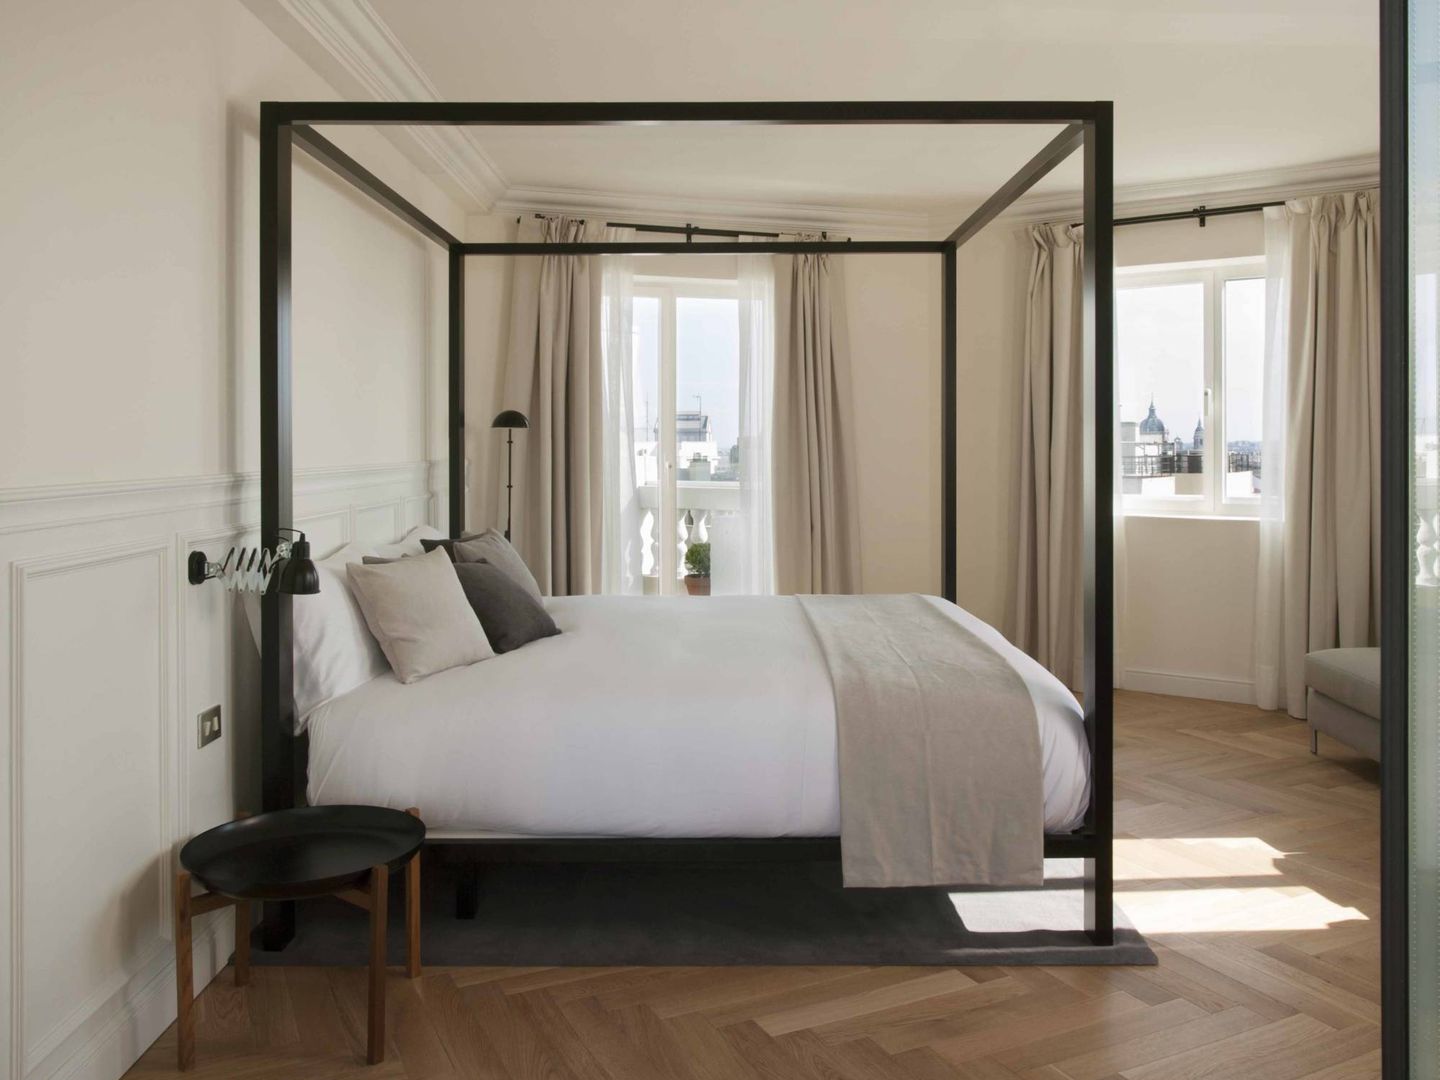 Las habitaciones del Dear tienen vistas espectaculares sobre Madrid